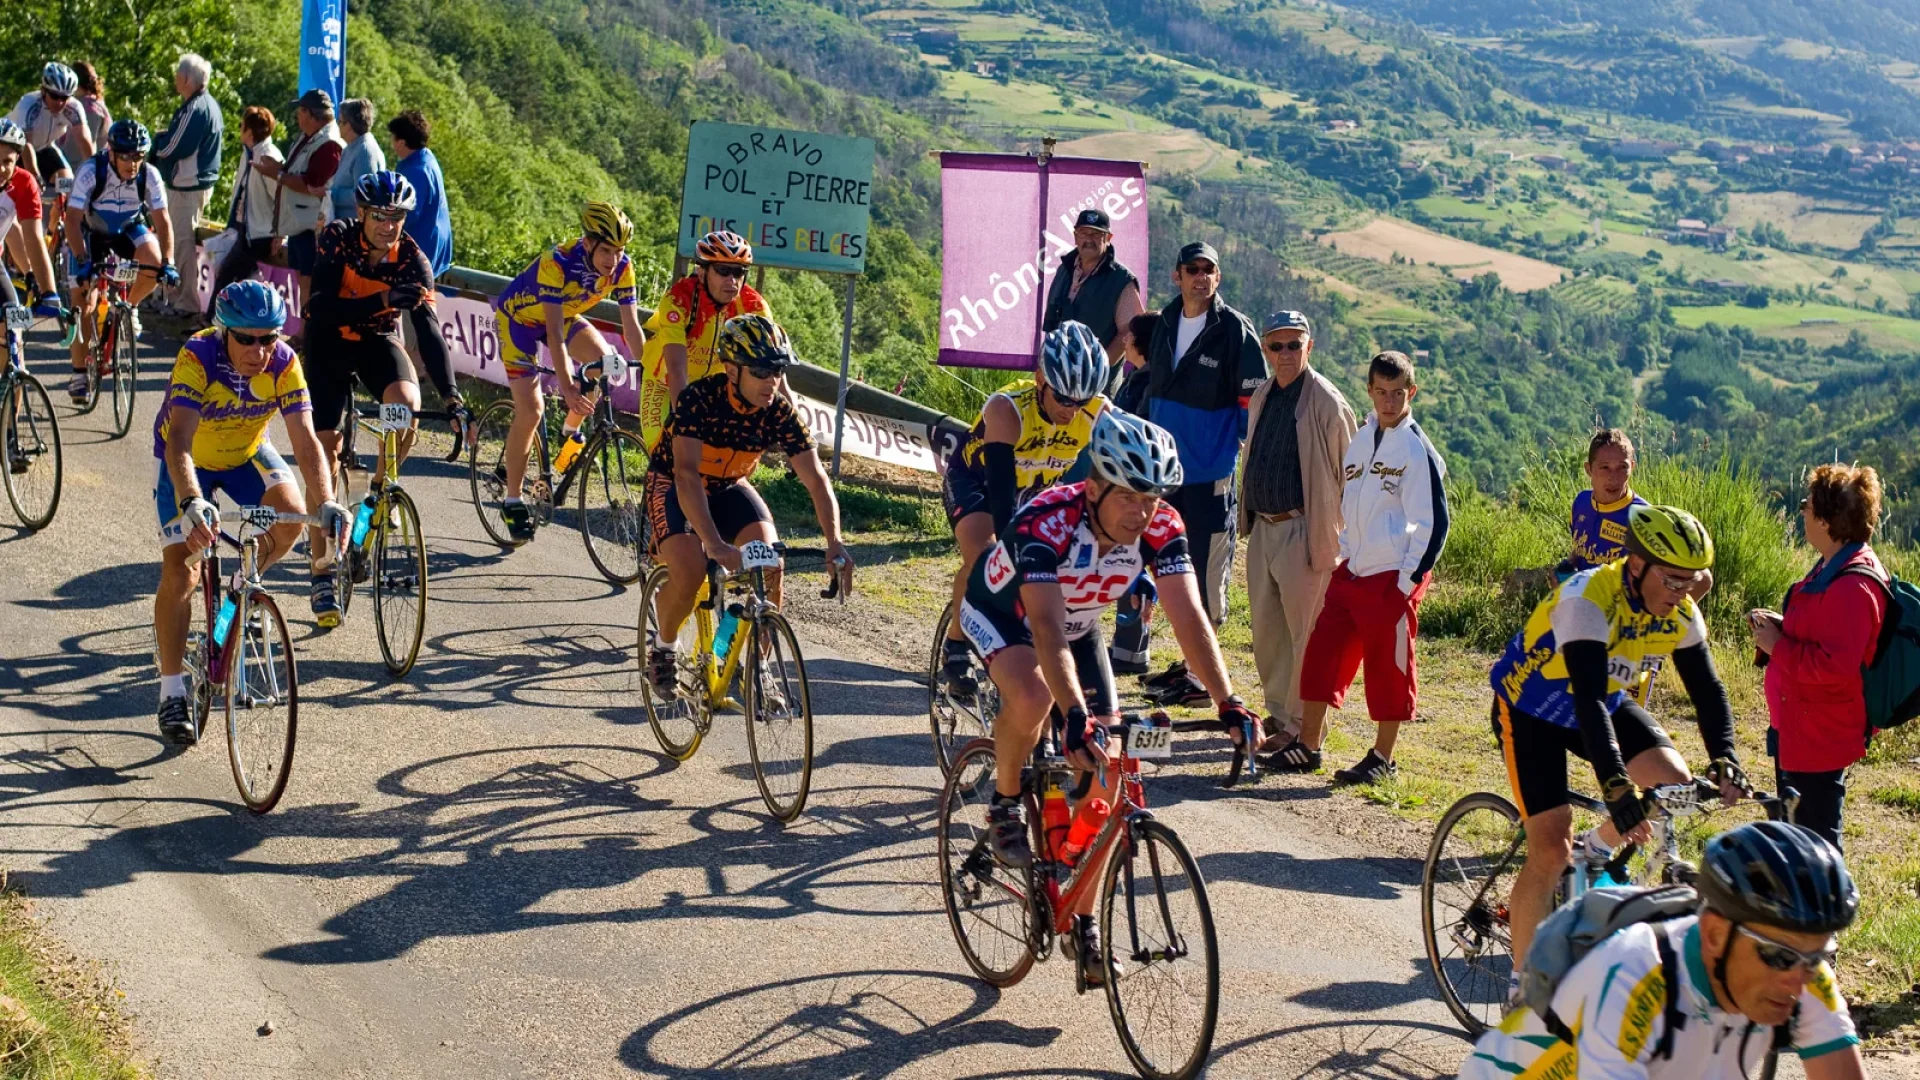 Ardéchoise cycling race, in summer